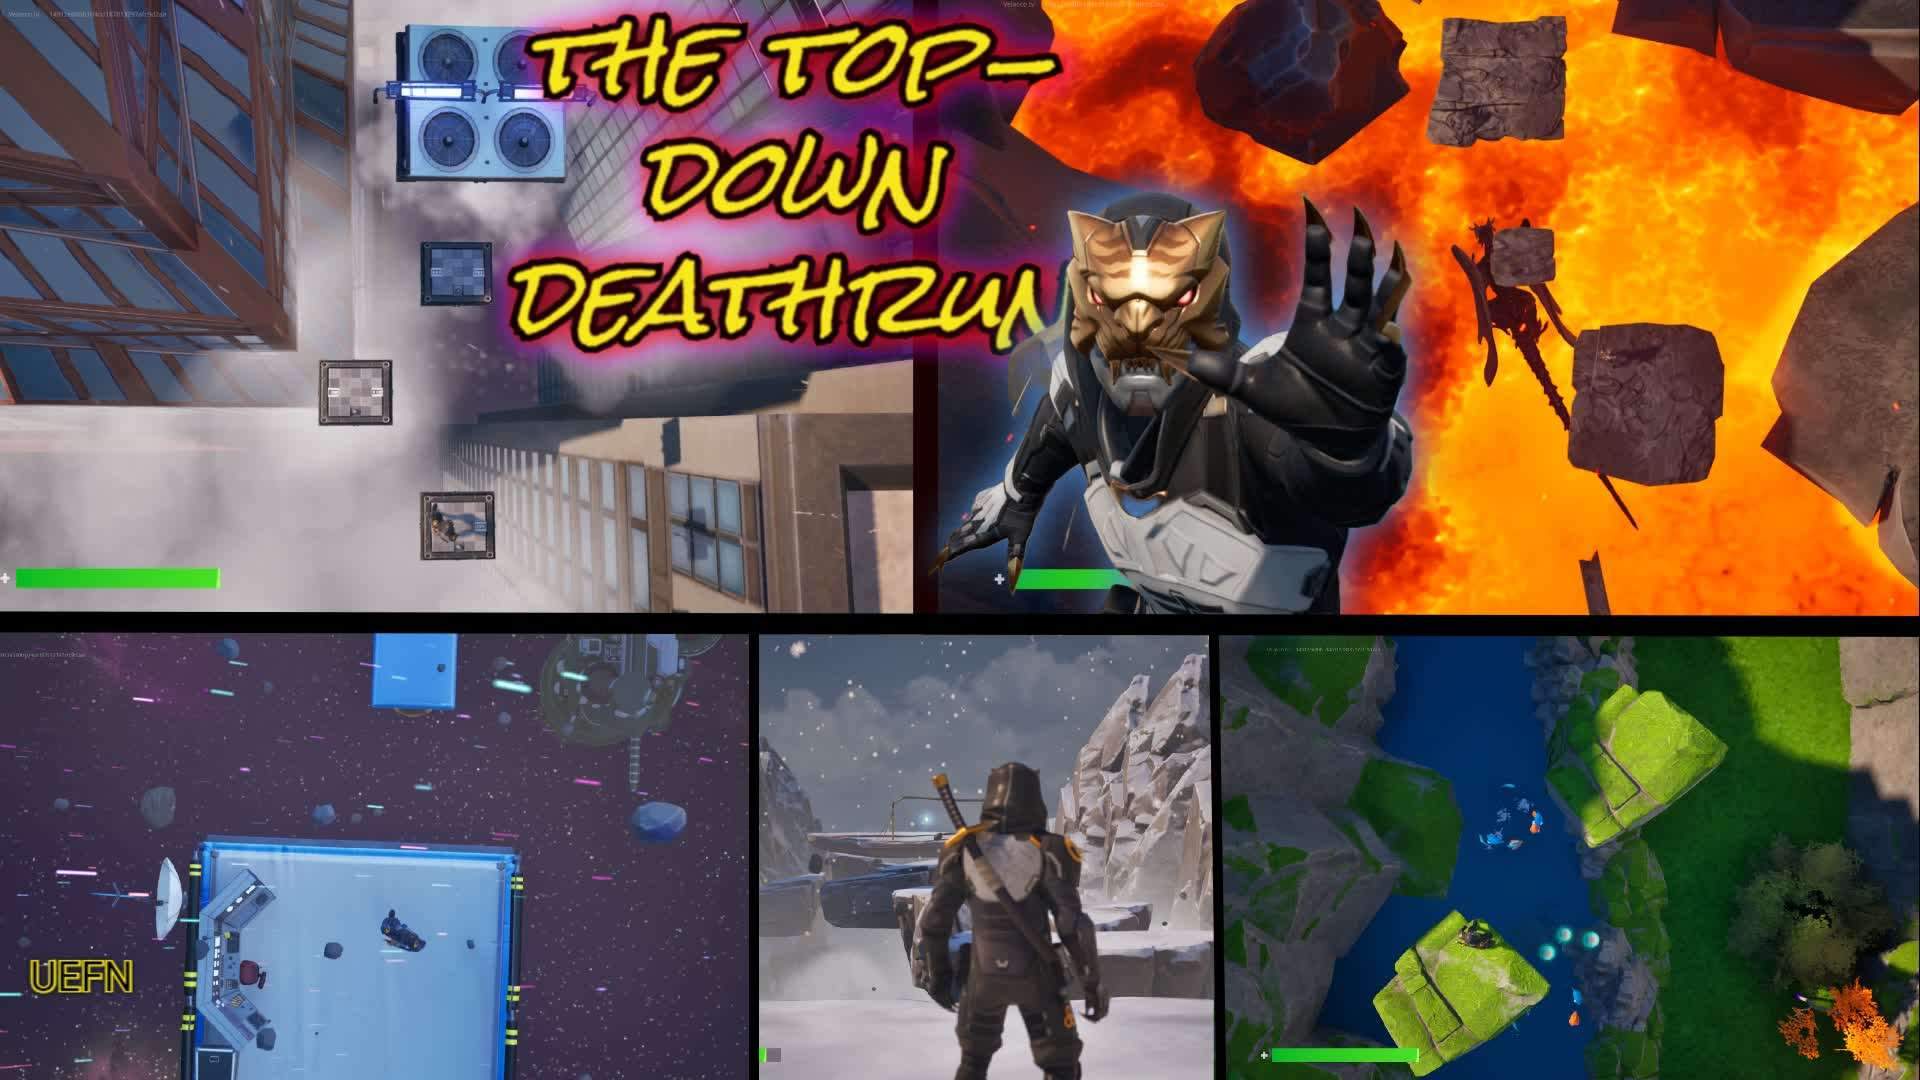 The top-down Deathrun